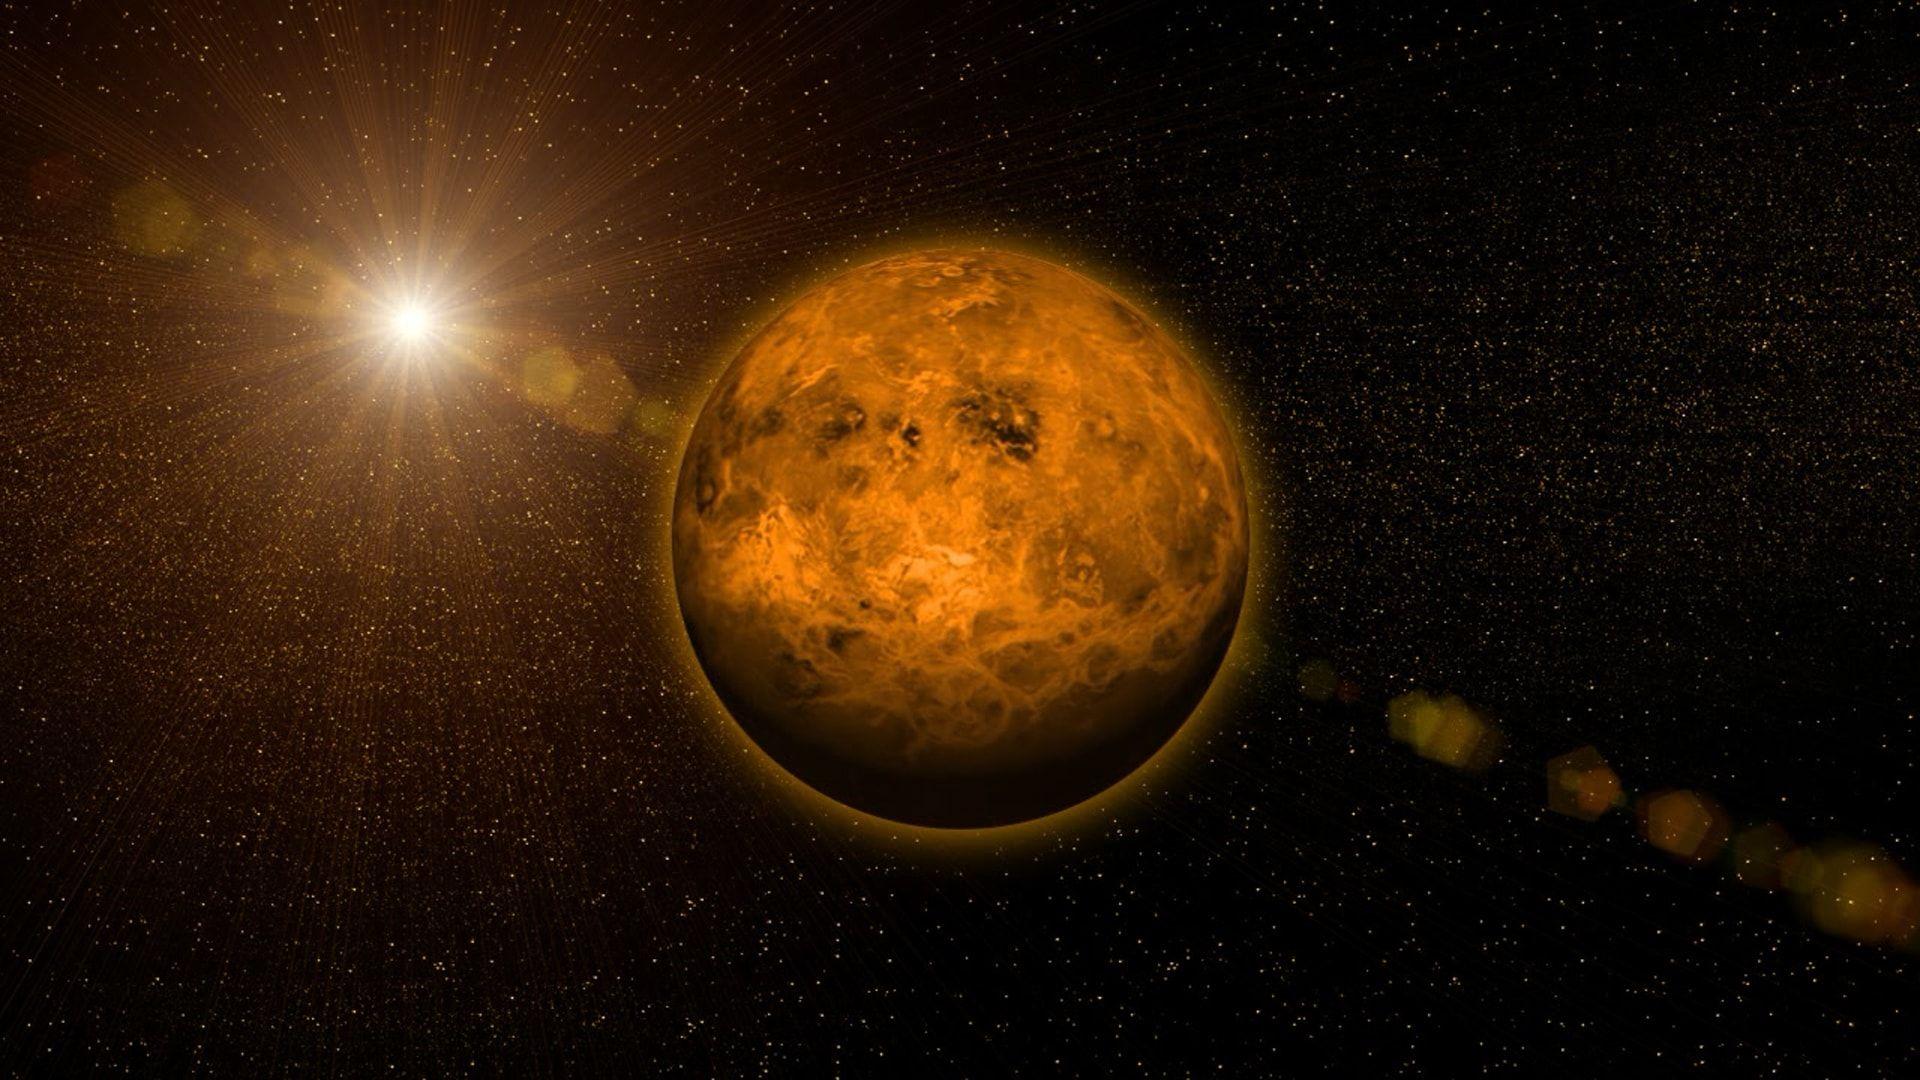 金星の「雲」を観測すれば、地表や大気の謎が解けるかもしれない：探査機「あかつき」の調査で明らかに | WIRED.jp